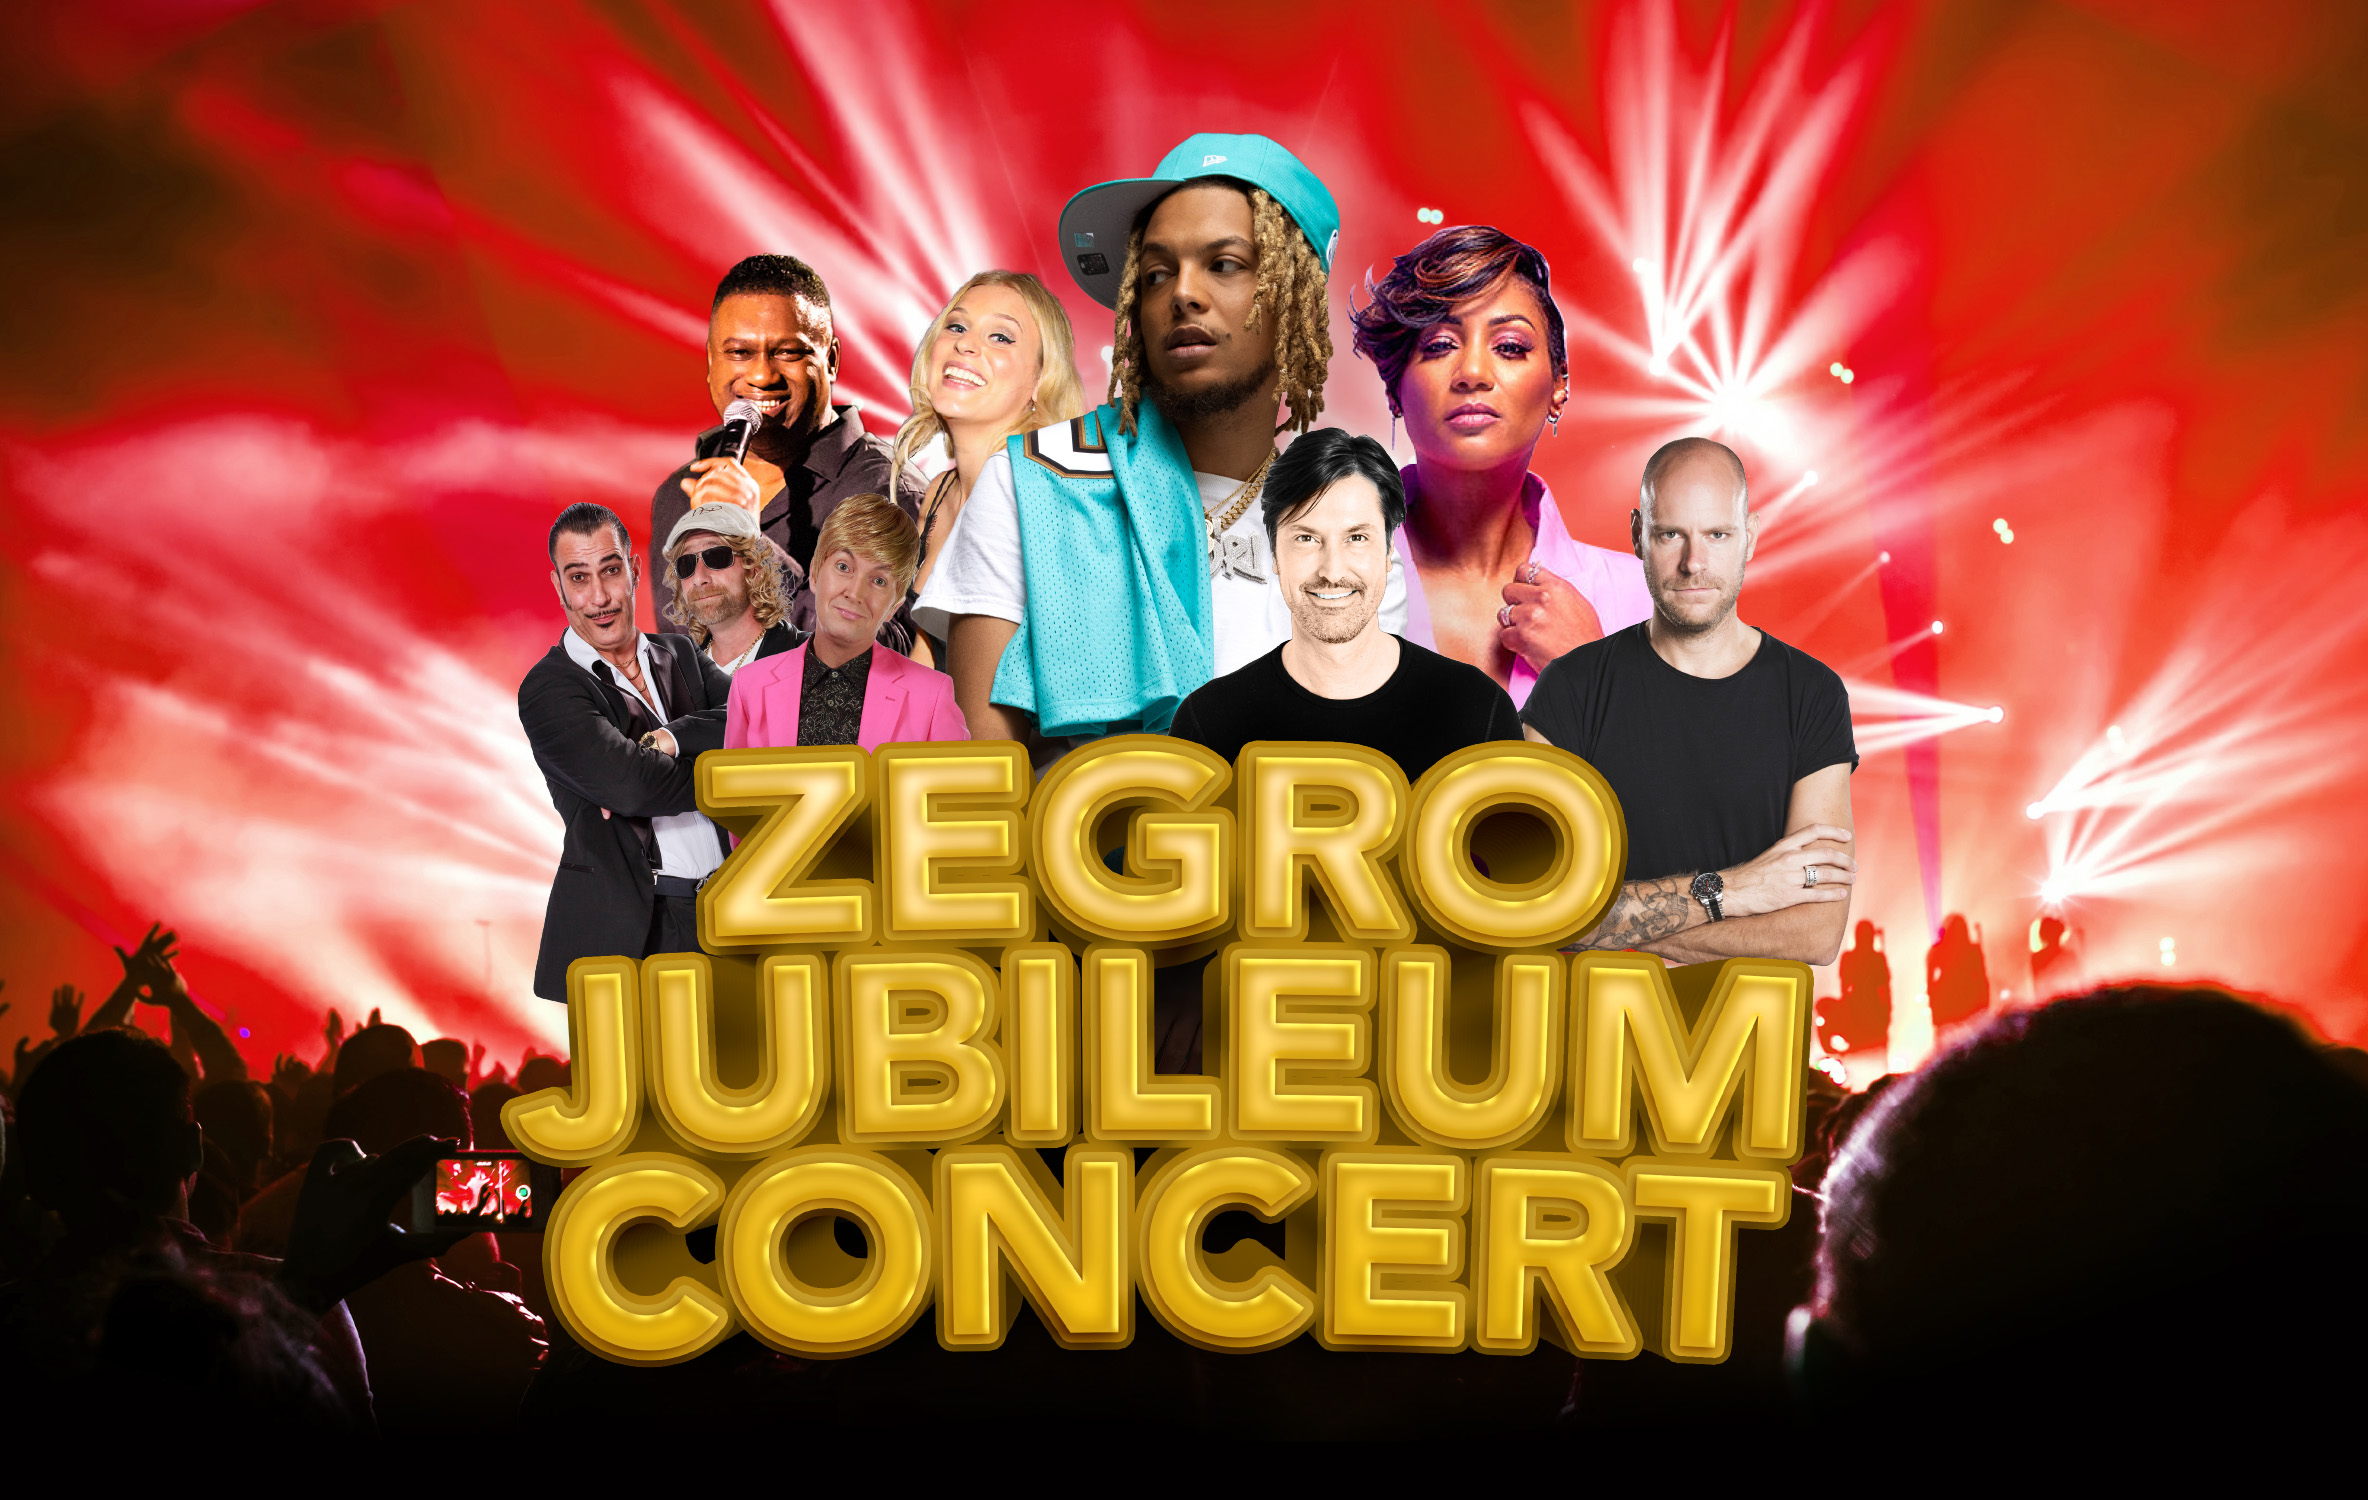 ZEGRO Jubileum Concert